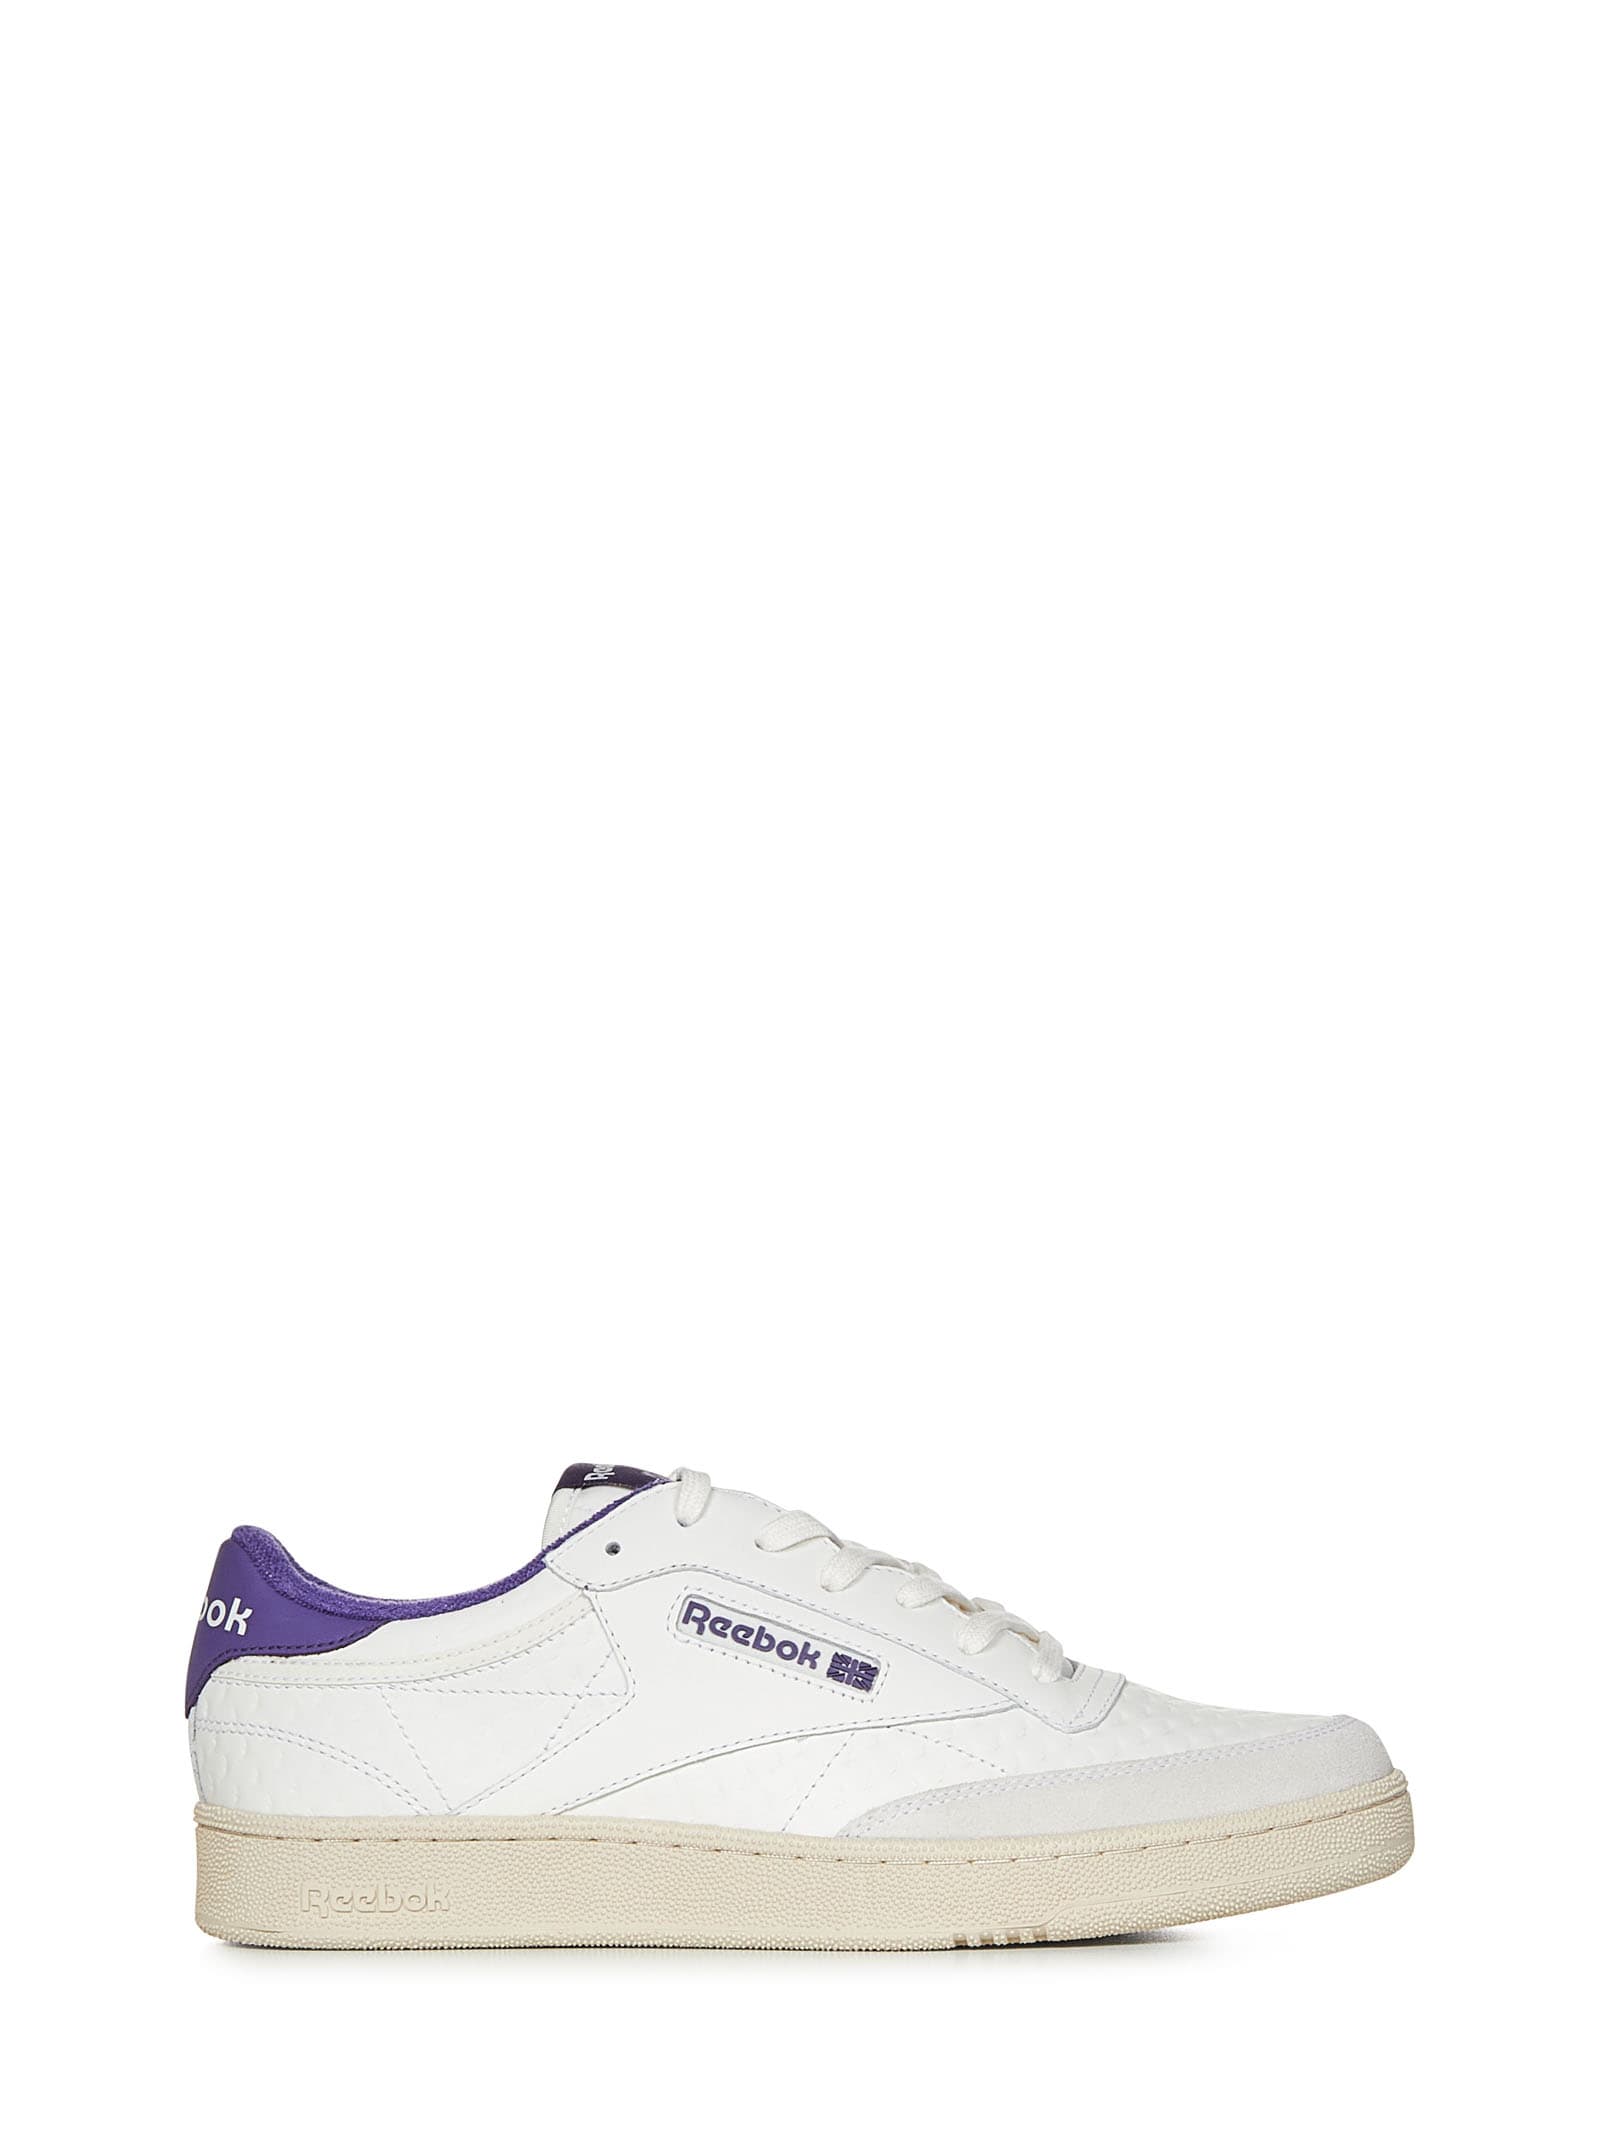 Shop Reebok Club C Sneakers In Violet